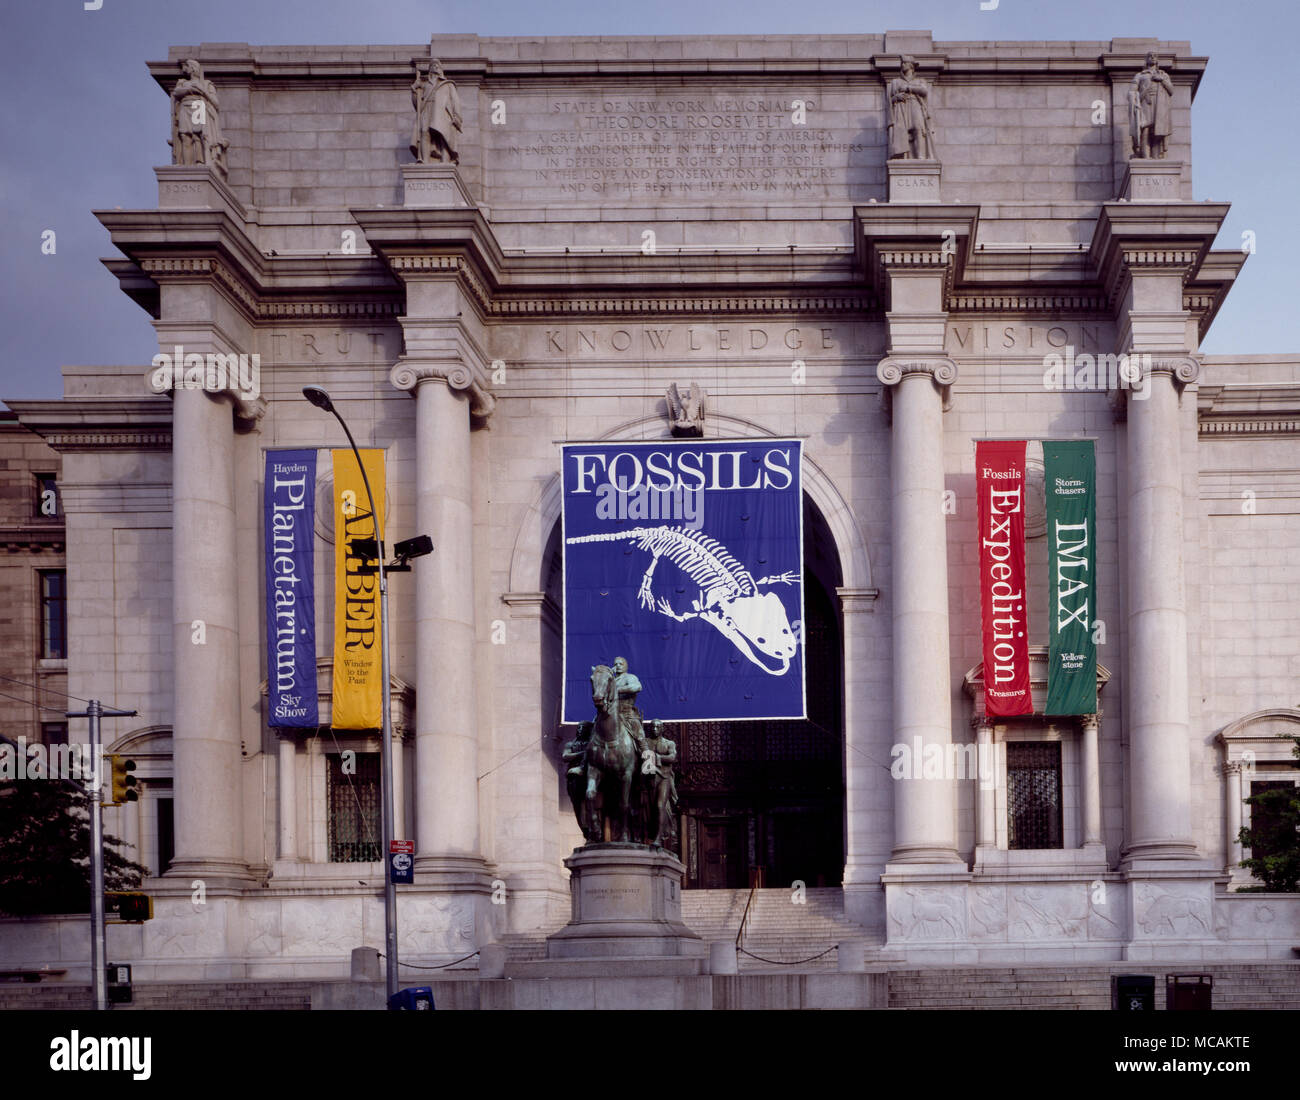 Il Museo Americano di Storia Naturale (abbreviato come AMNH), situato sulla Upper West Side di Manhattan a New York City è uno dei più grandi e più celebri musei in tutto il mondo. Situato nel parco-come motivi attraversata la strada dal Parco Centrale, il complesso museale contiene 27 edifici interconnessi alloggiamento 45 mostra permanente sale, oltre a un planetario e una biblioteca. Le collezioni del museo contengono oltre 32 milioni di esemplari di piante, esseri umani, animali, fossili, minerali, rocce, meteoriti, umani e culturali, di cui solo una piccola frazione può essere visualizzato in qualsiasi Foto Stock